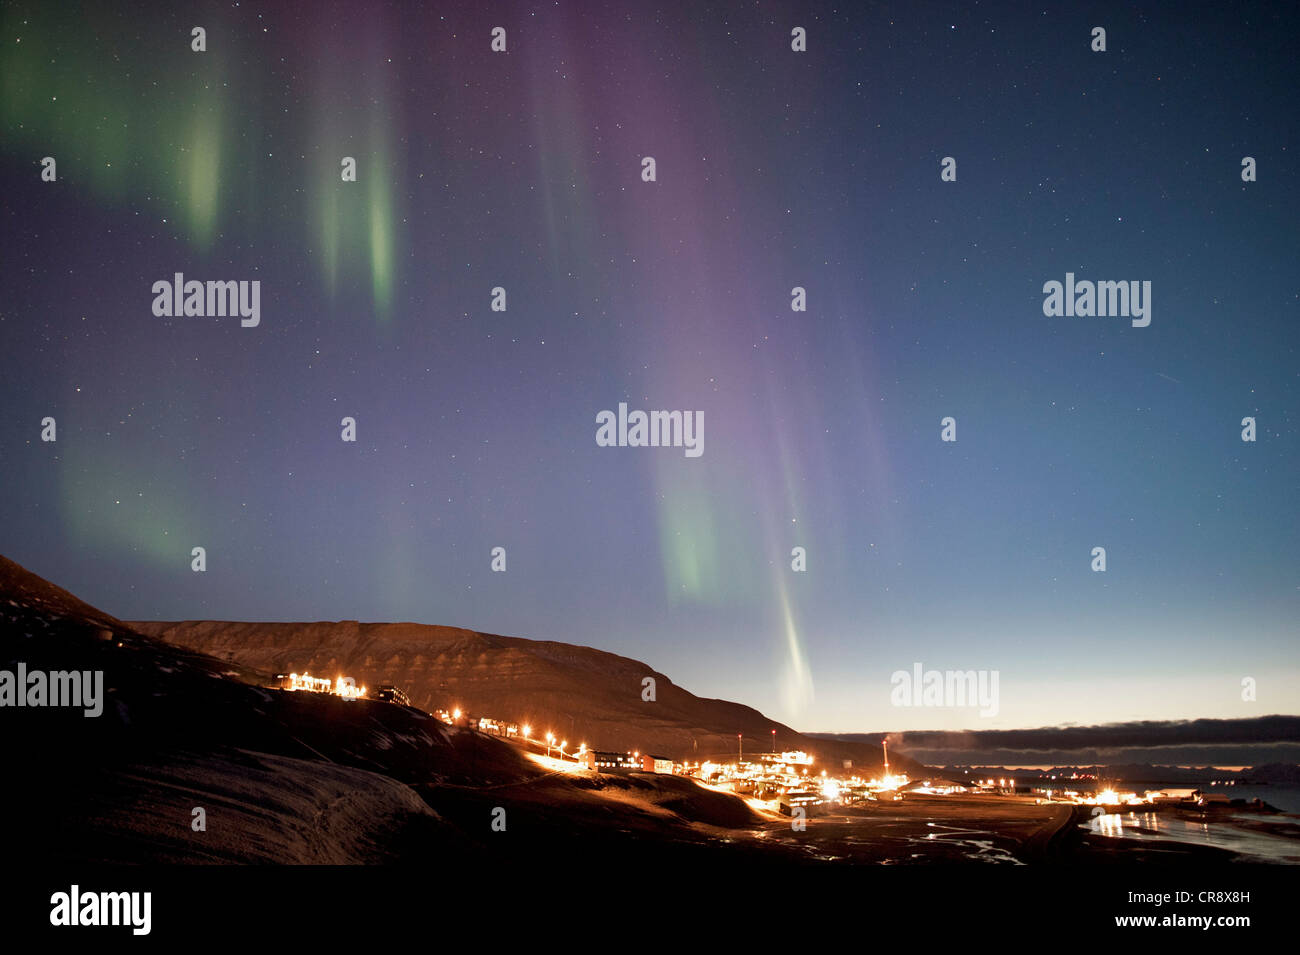 La faiblesse de northern lights, aurora borealis, au-dessus de la ville de Longyearbyen, Svalbard, Spitzberg, Norvège, Scandinavie, Europe Banque D'Images